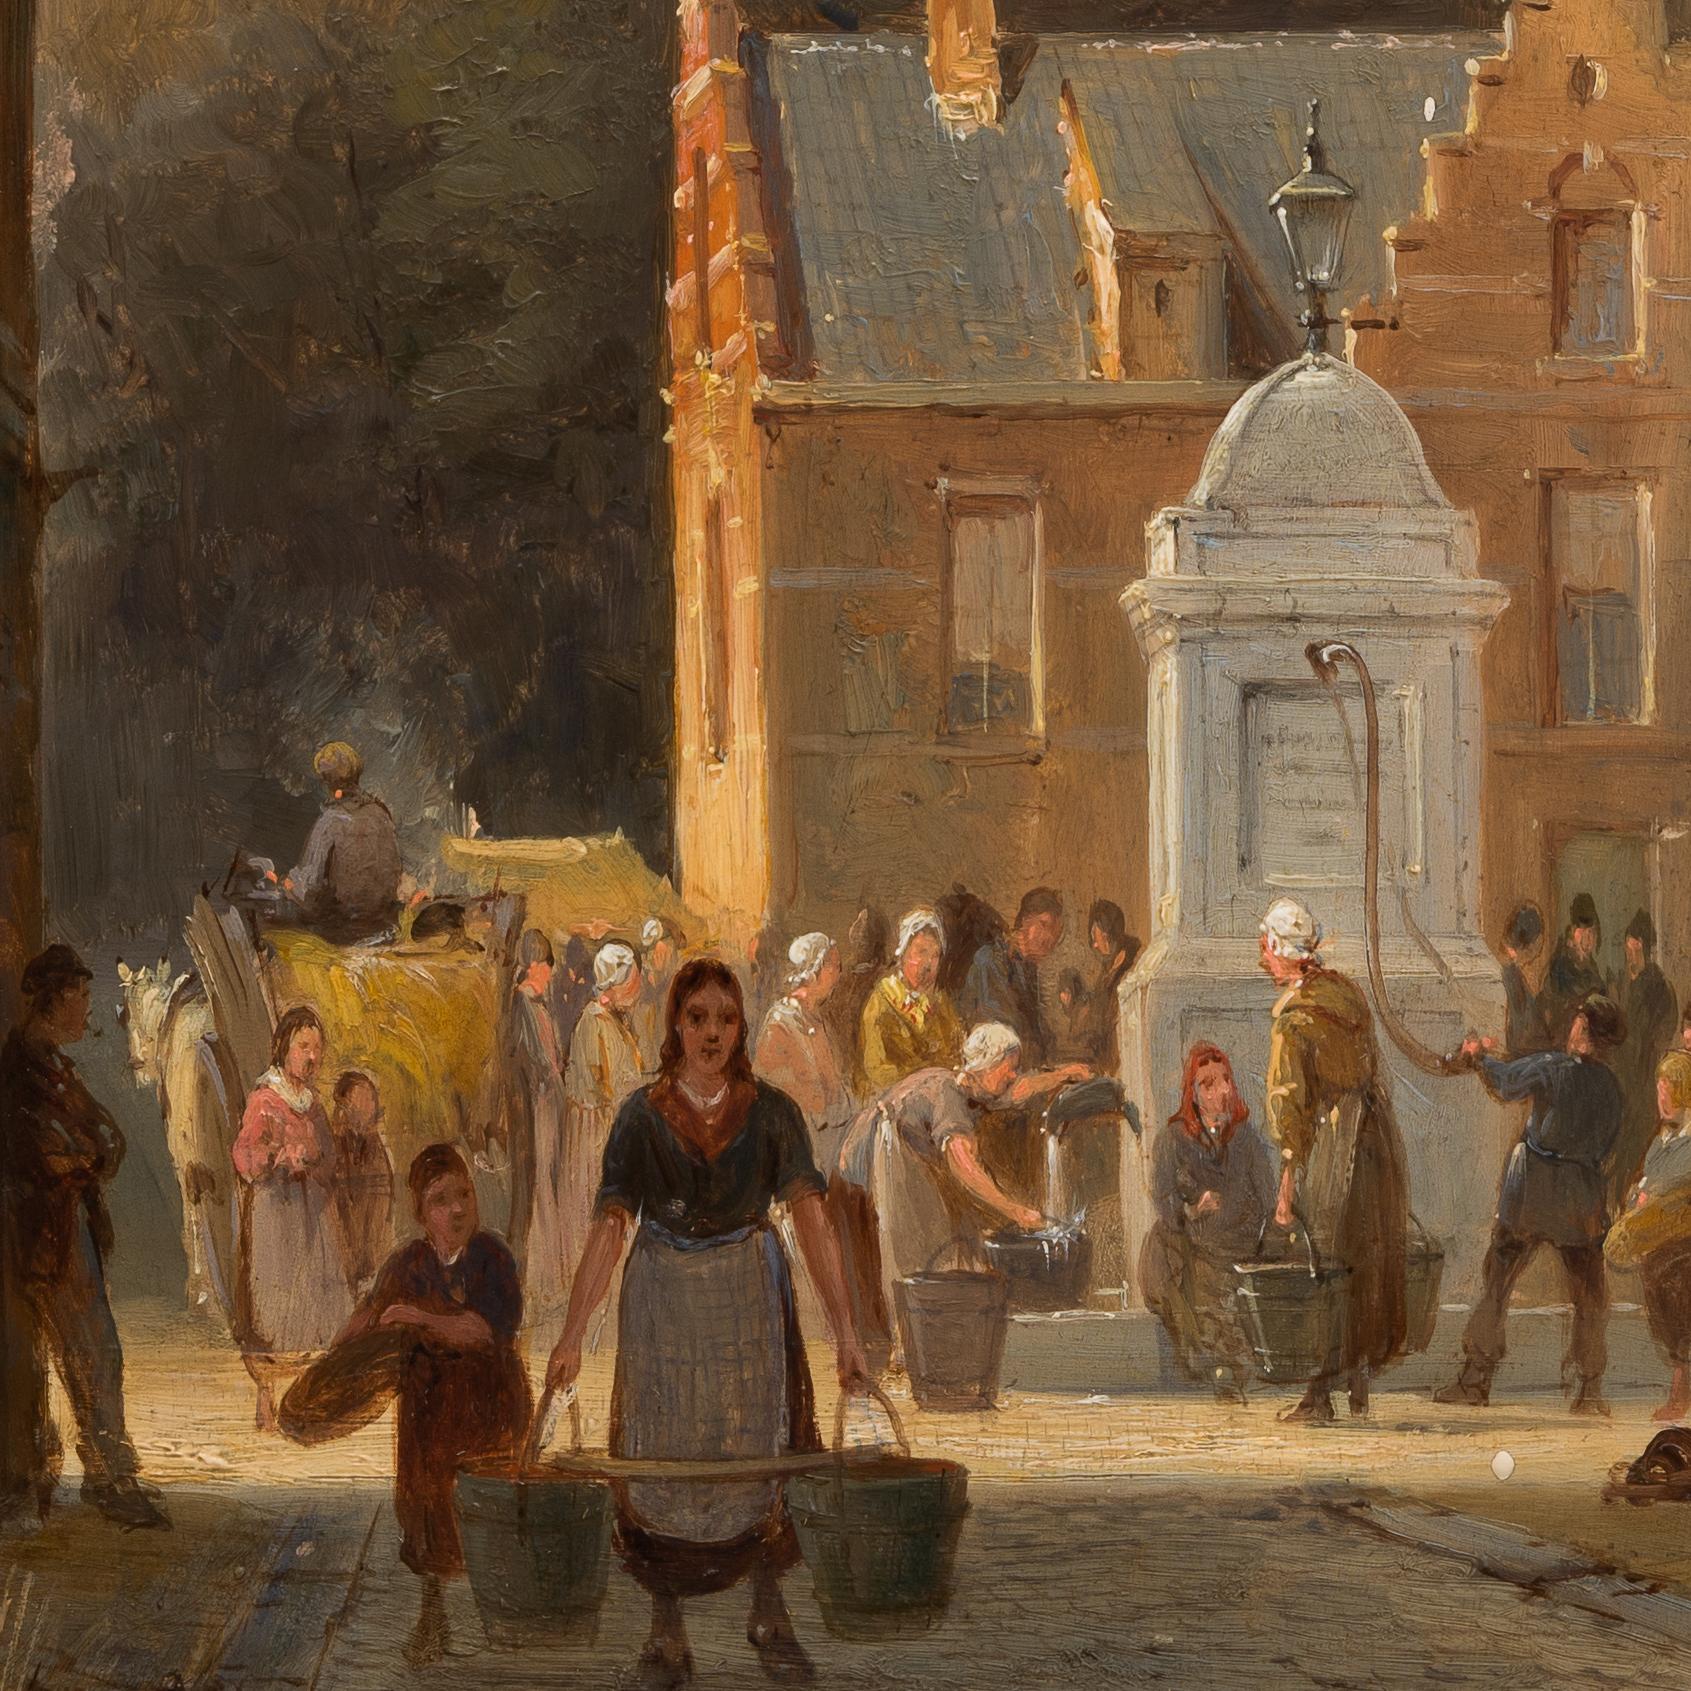 Pieter Cornelis Dommersen, auch bekannt als Pieter Cornelis Dommershuijzen (1833 - nach 1913), war bekannt für seine Capriccio-Gemälde, in denen sich Fantasie und Realität vermischen. Dommersen schuf Szenen, die sowohl von Authentizität als auch von